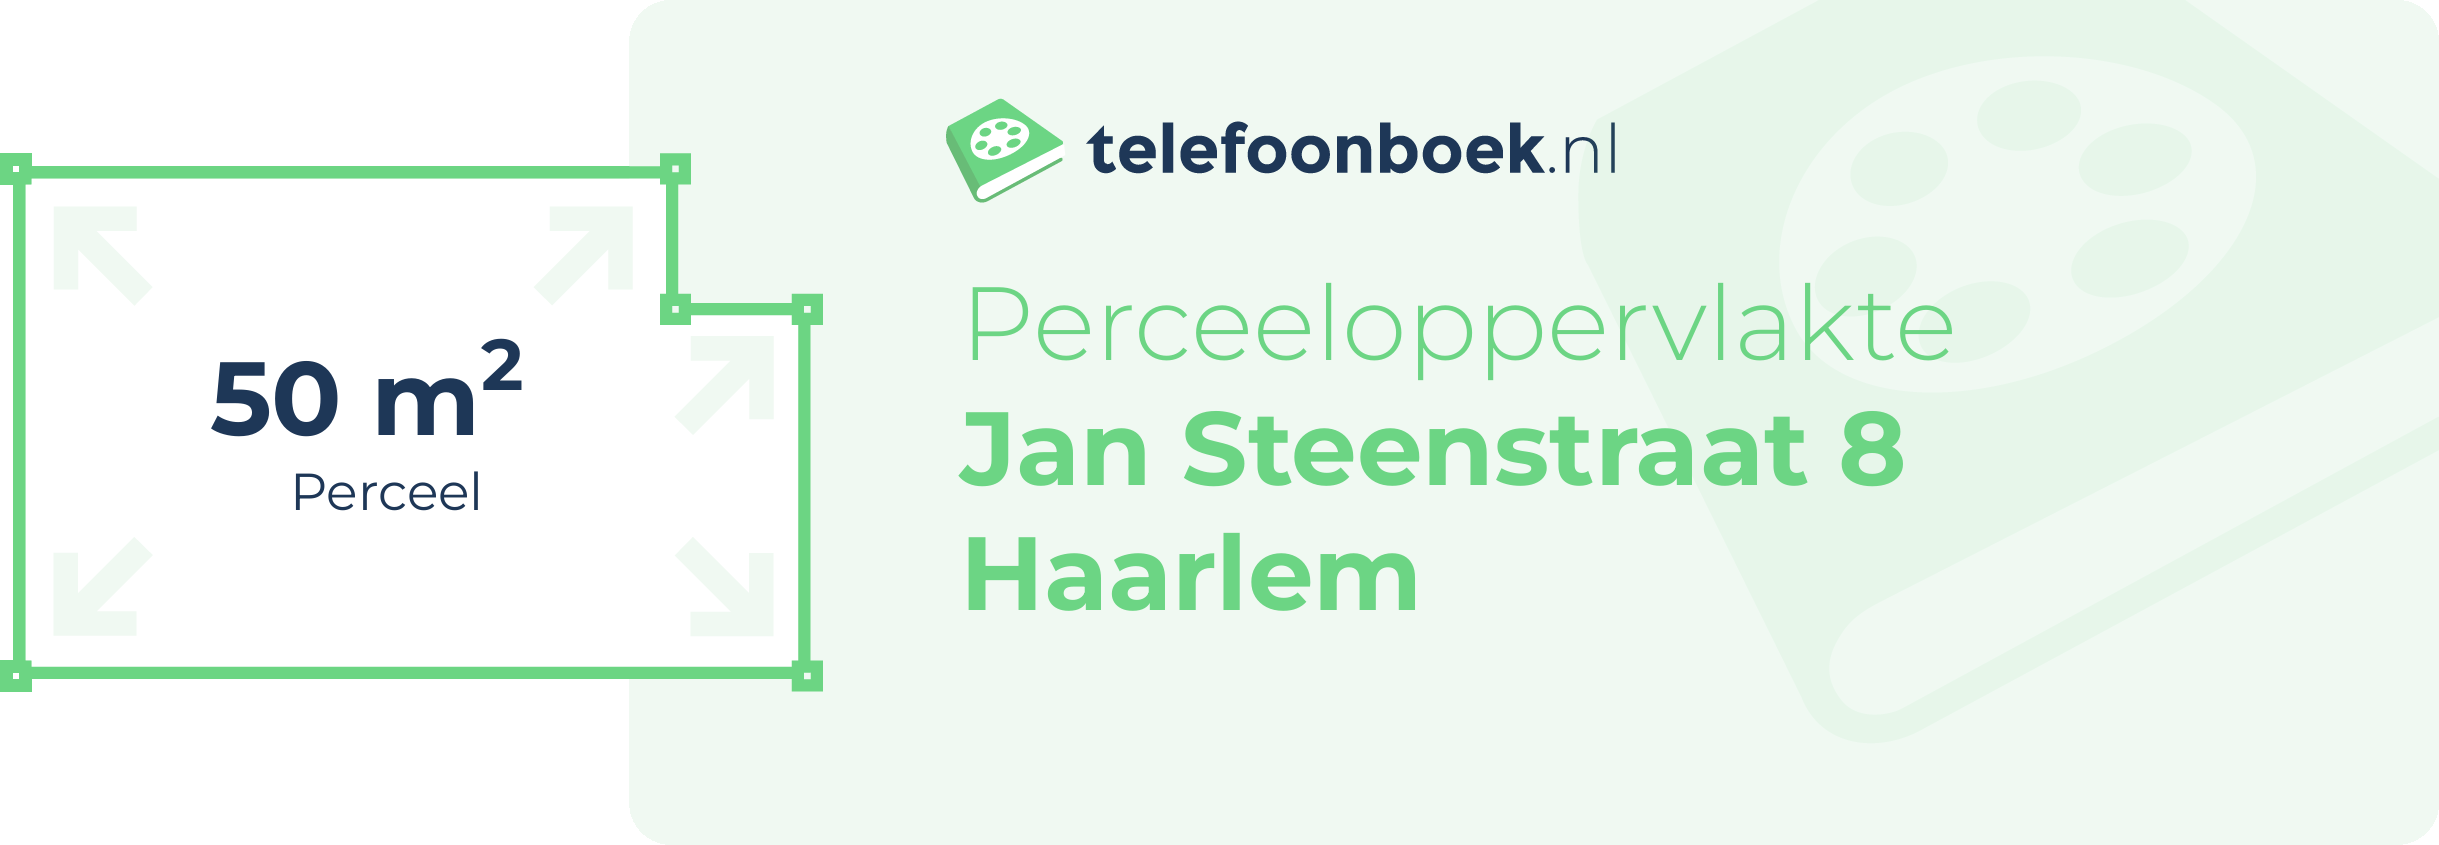 Perceeloppervlakte Jan Steenstraat 8 Haarlem